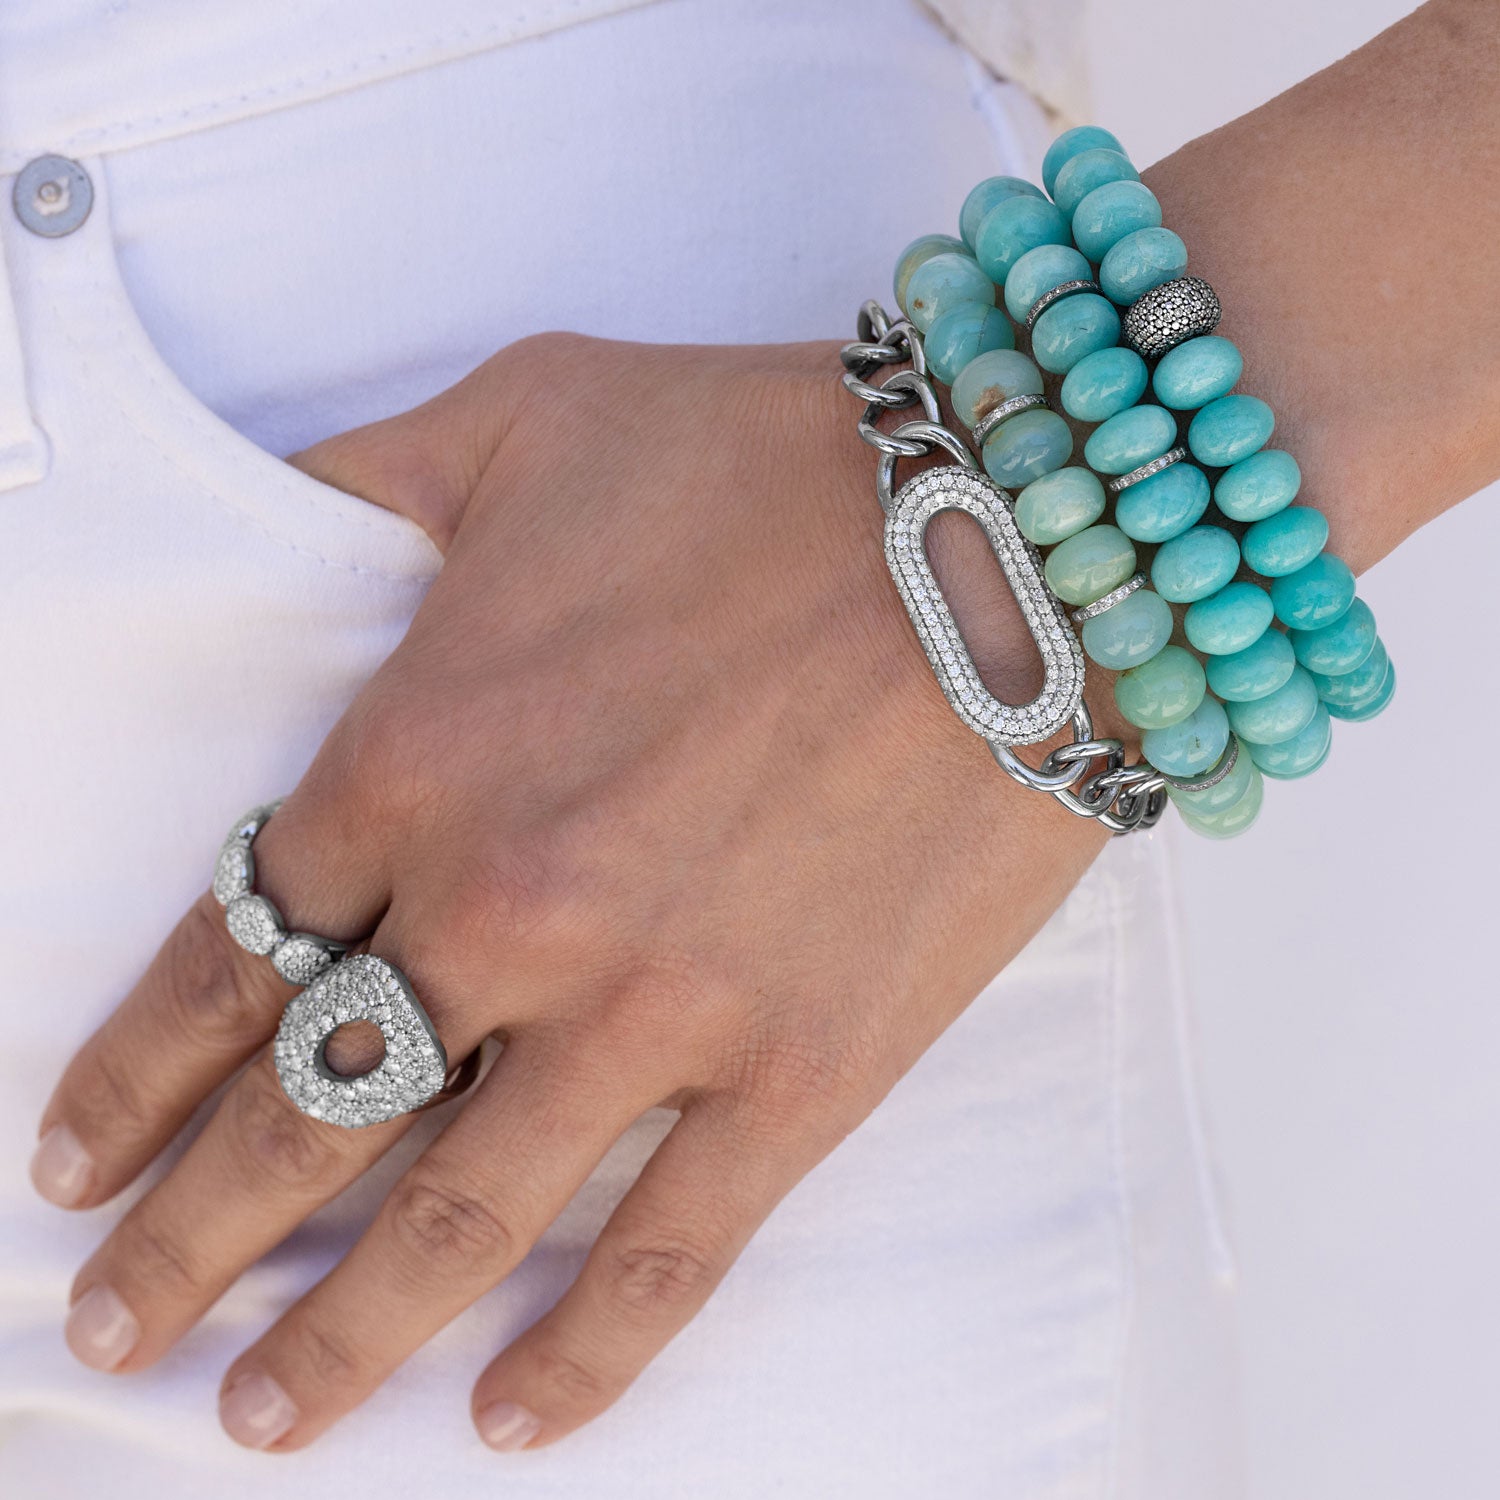 Buy the Blue Czech Beaded Bracelet with Blue Tassel | JaeBee Jewelry